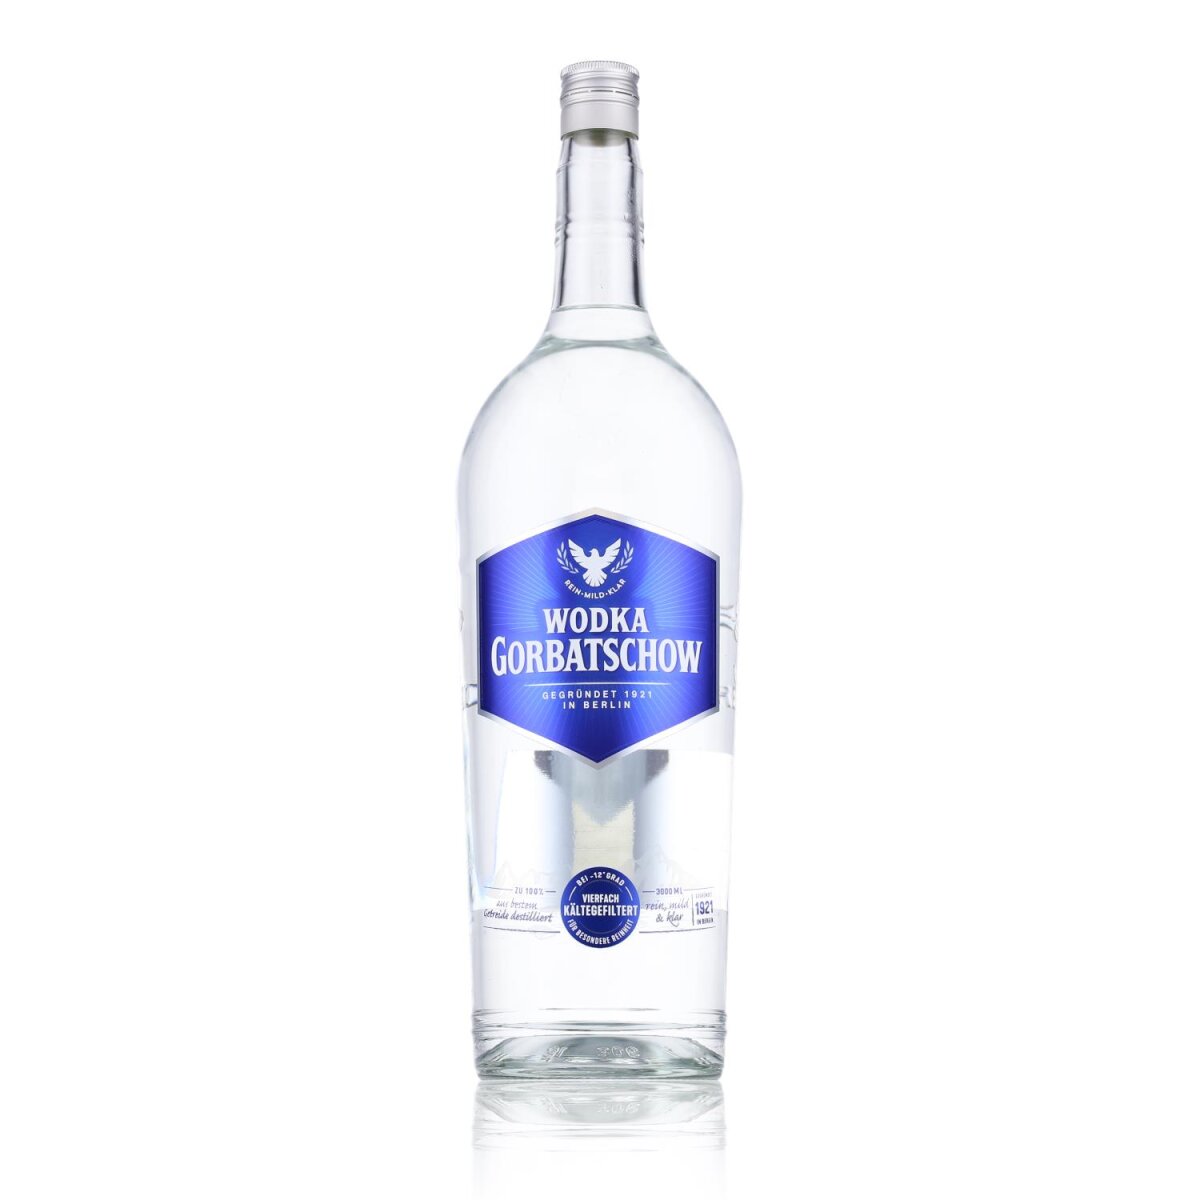 Gorbatschow Wodka 37,5% Vol. 47,29 3l, €